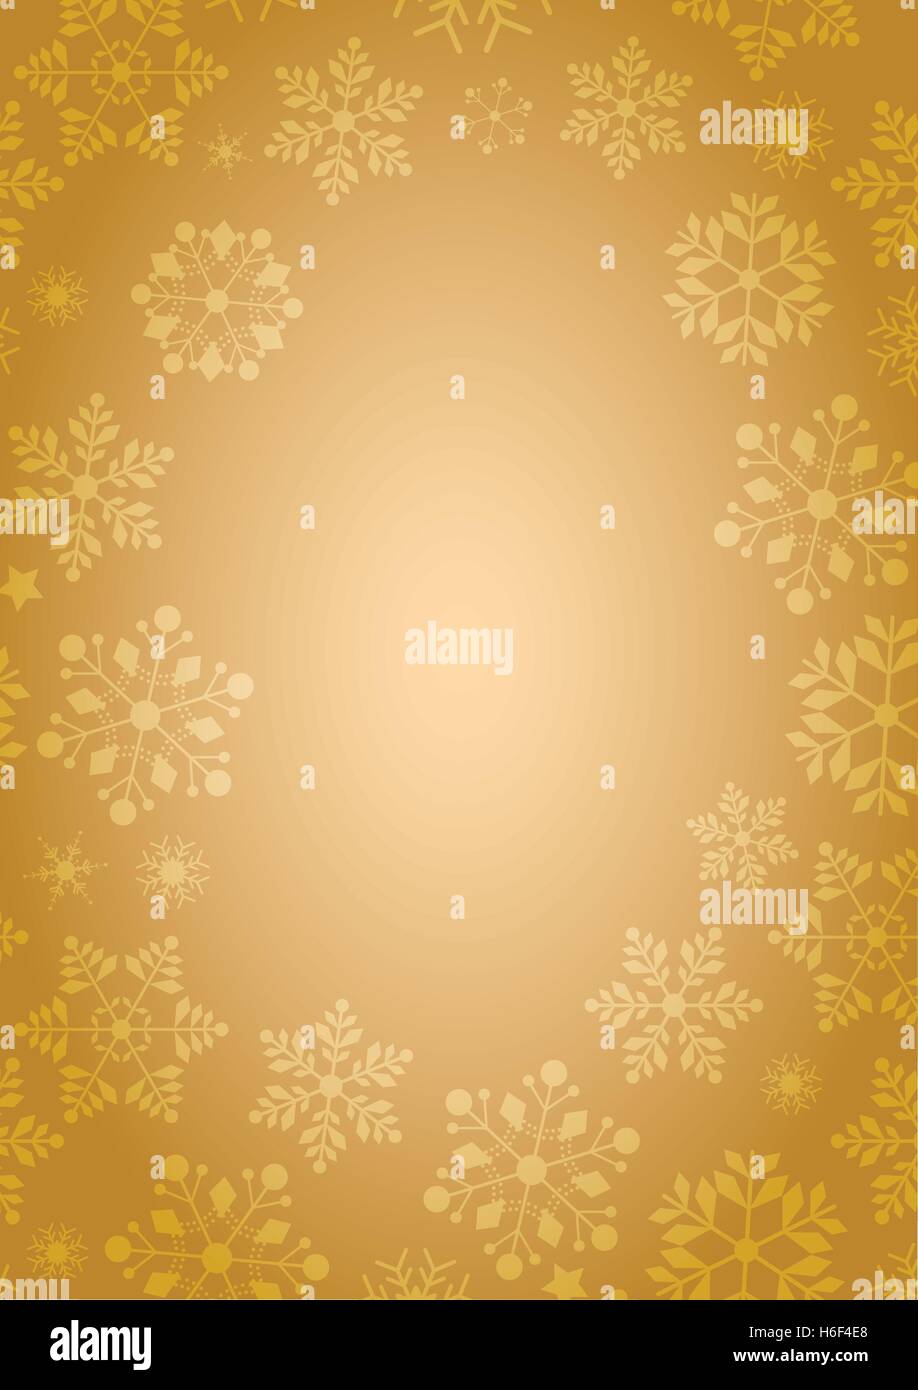 A4 Größe gold Hintergrund mit Winter Schneeflocken Grenze im Vektor-format Stock Vektor